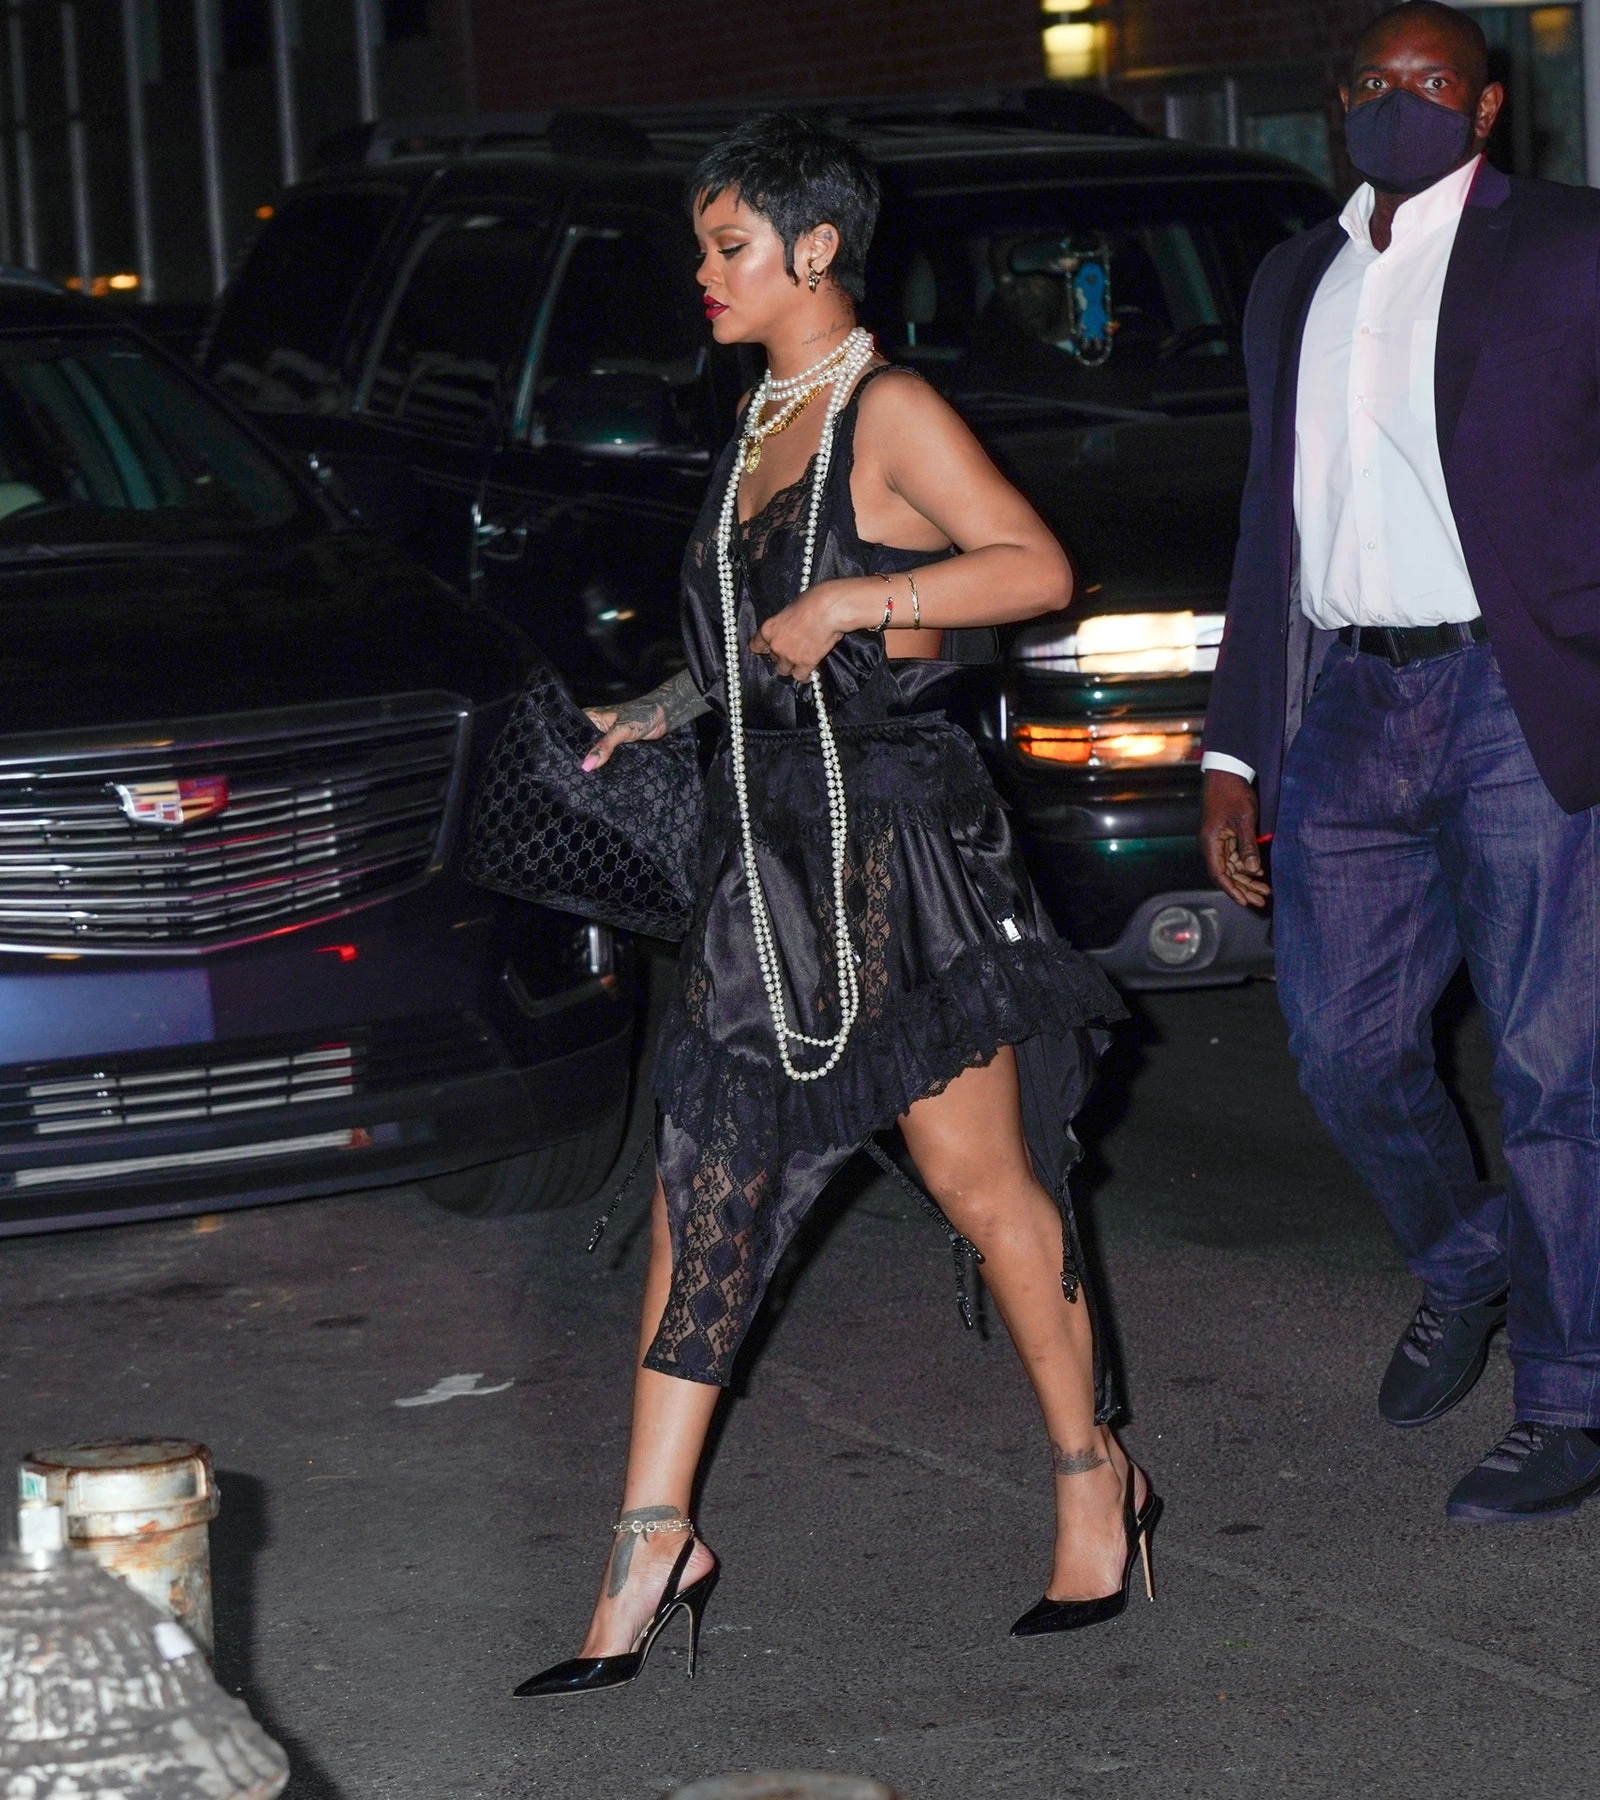 Папараці зафіксували співачку під час вечері в Нью-Йорку з вінтажною сумкою Gucci. Модель із знаменитою монограмою бренду, випущена ще у 1990-х роках.